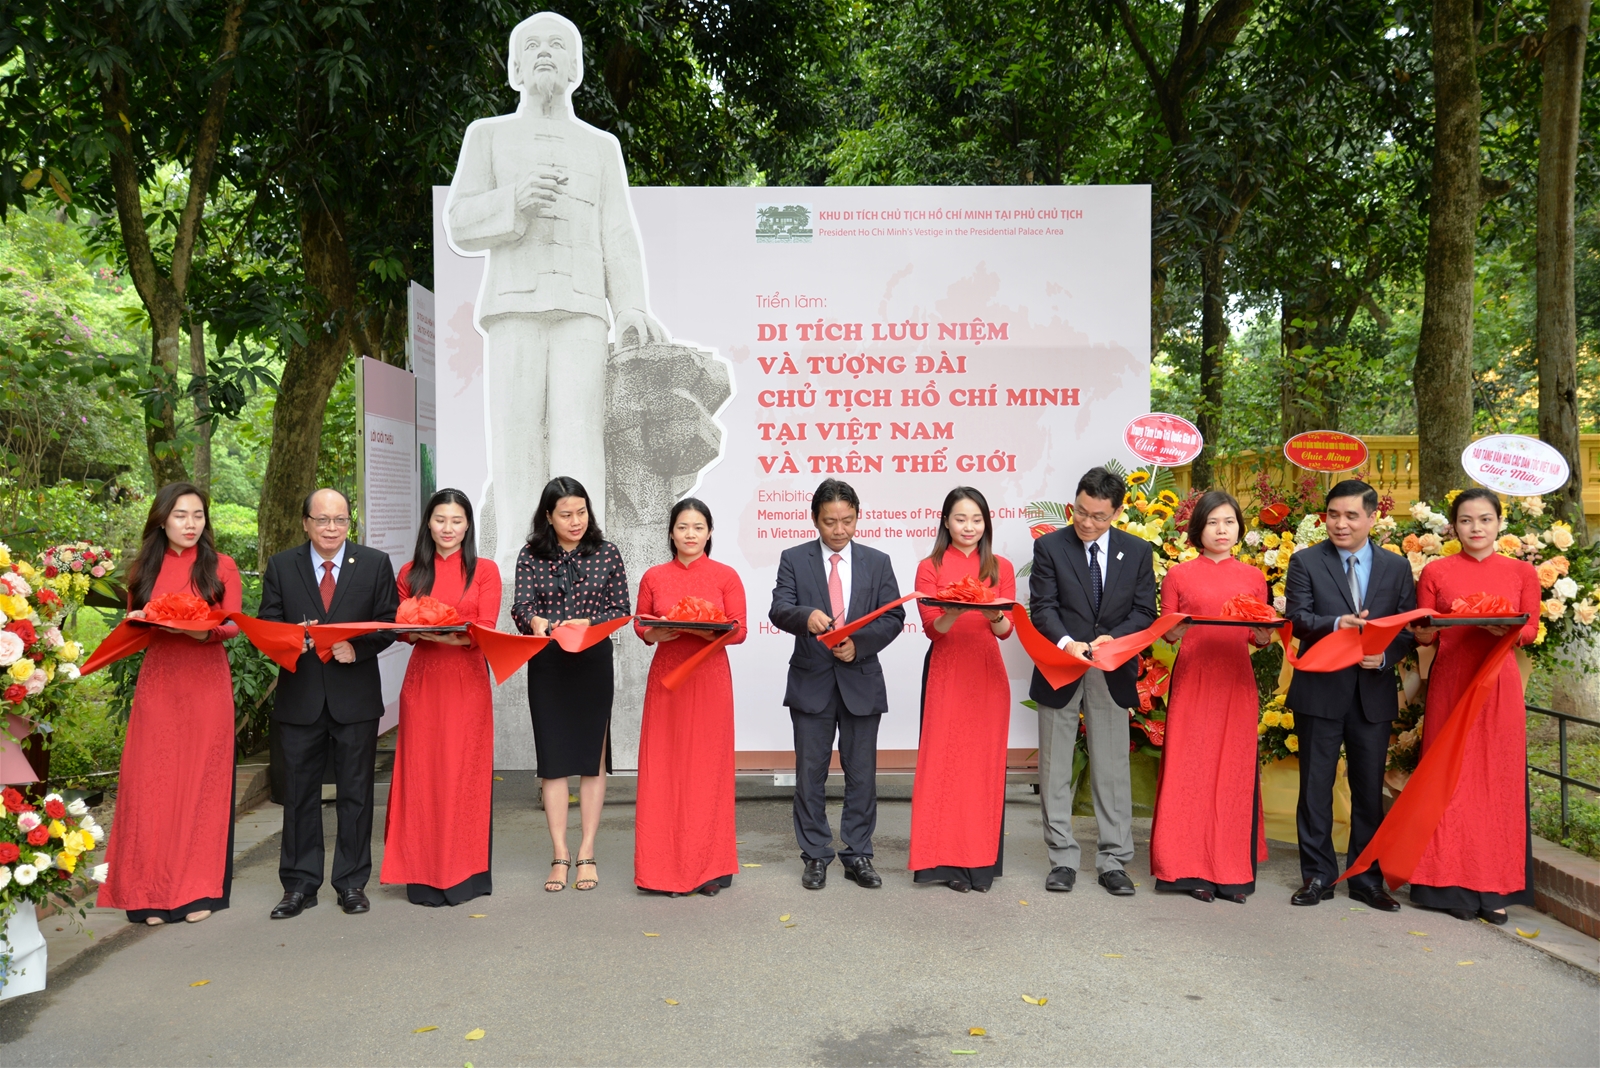 Khu Di tích Phủ Chủ tịch tổ chức triển lãm “Di tích lưu niệm và tượng đài Chủ tịch Hồ Chí Minh tại Việt Nam và trên thế giới”.